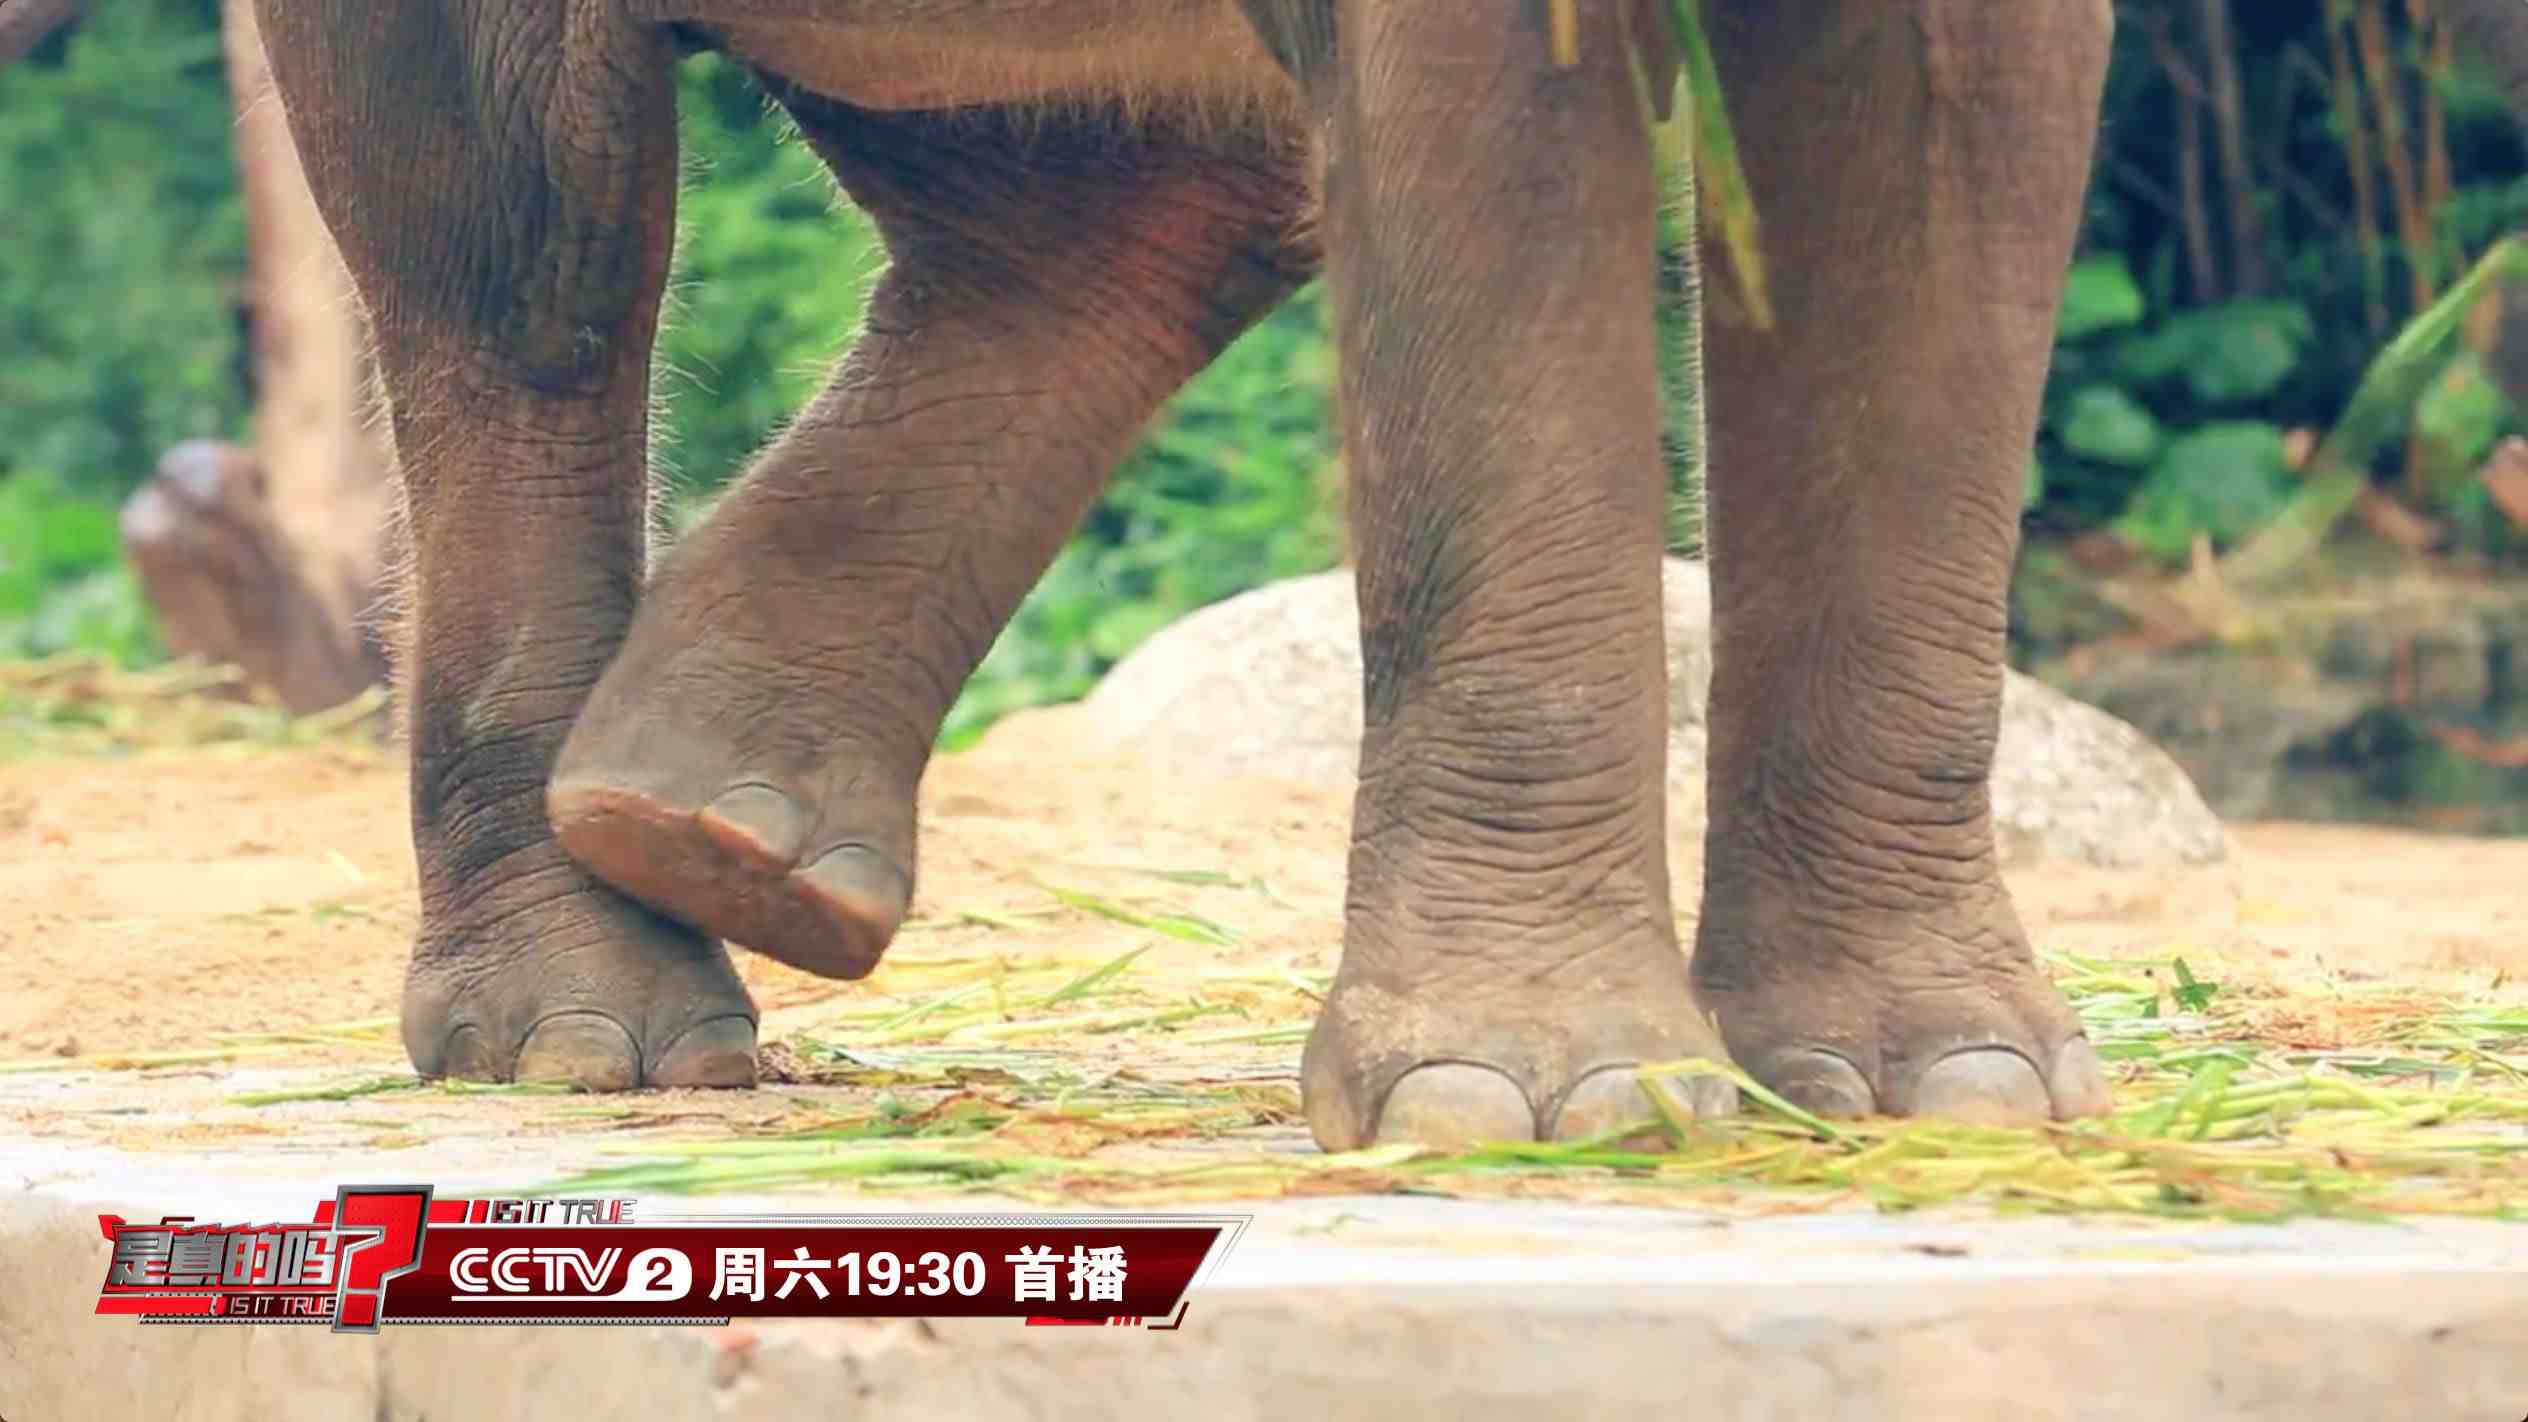 大象的脚印像什么(通过脚印就可测量大象身高)